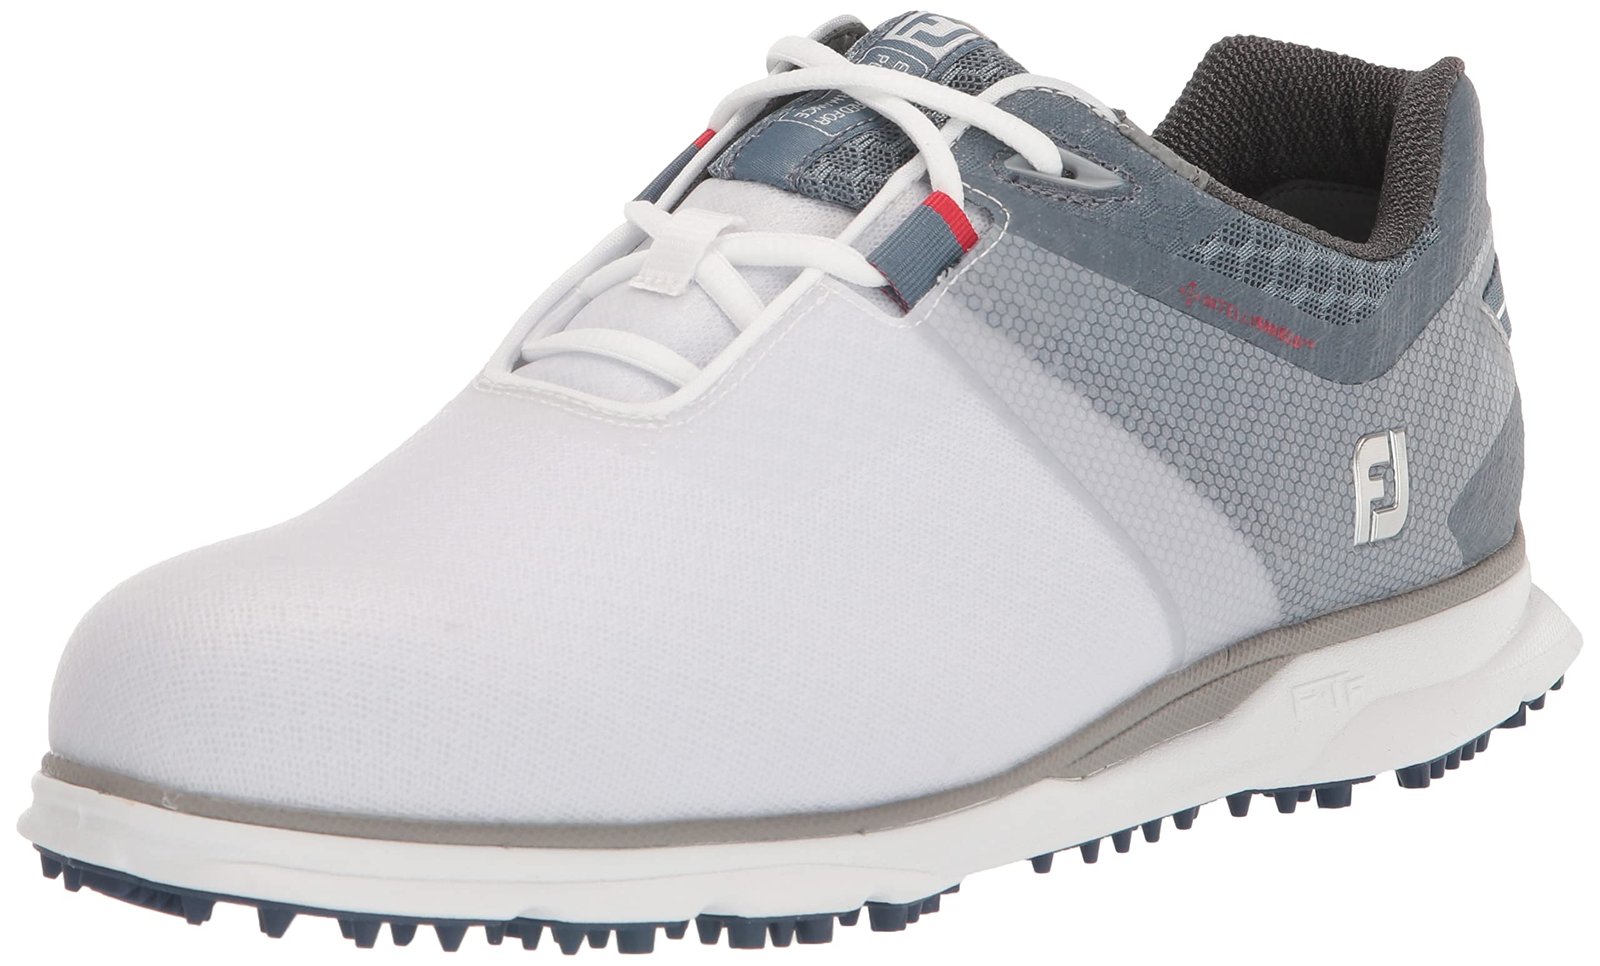 FootJoy Pro|sl Sport Golf Shoe